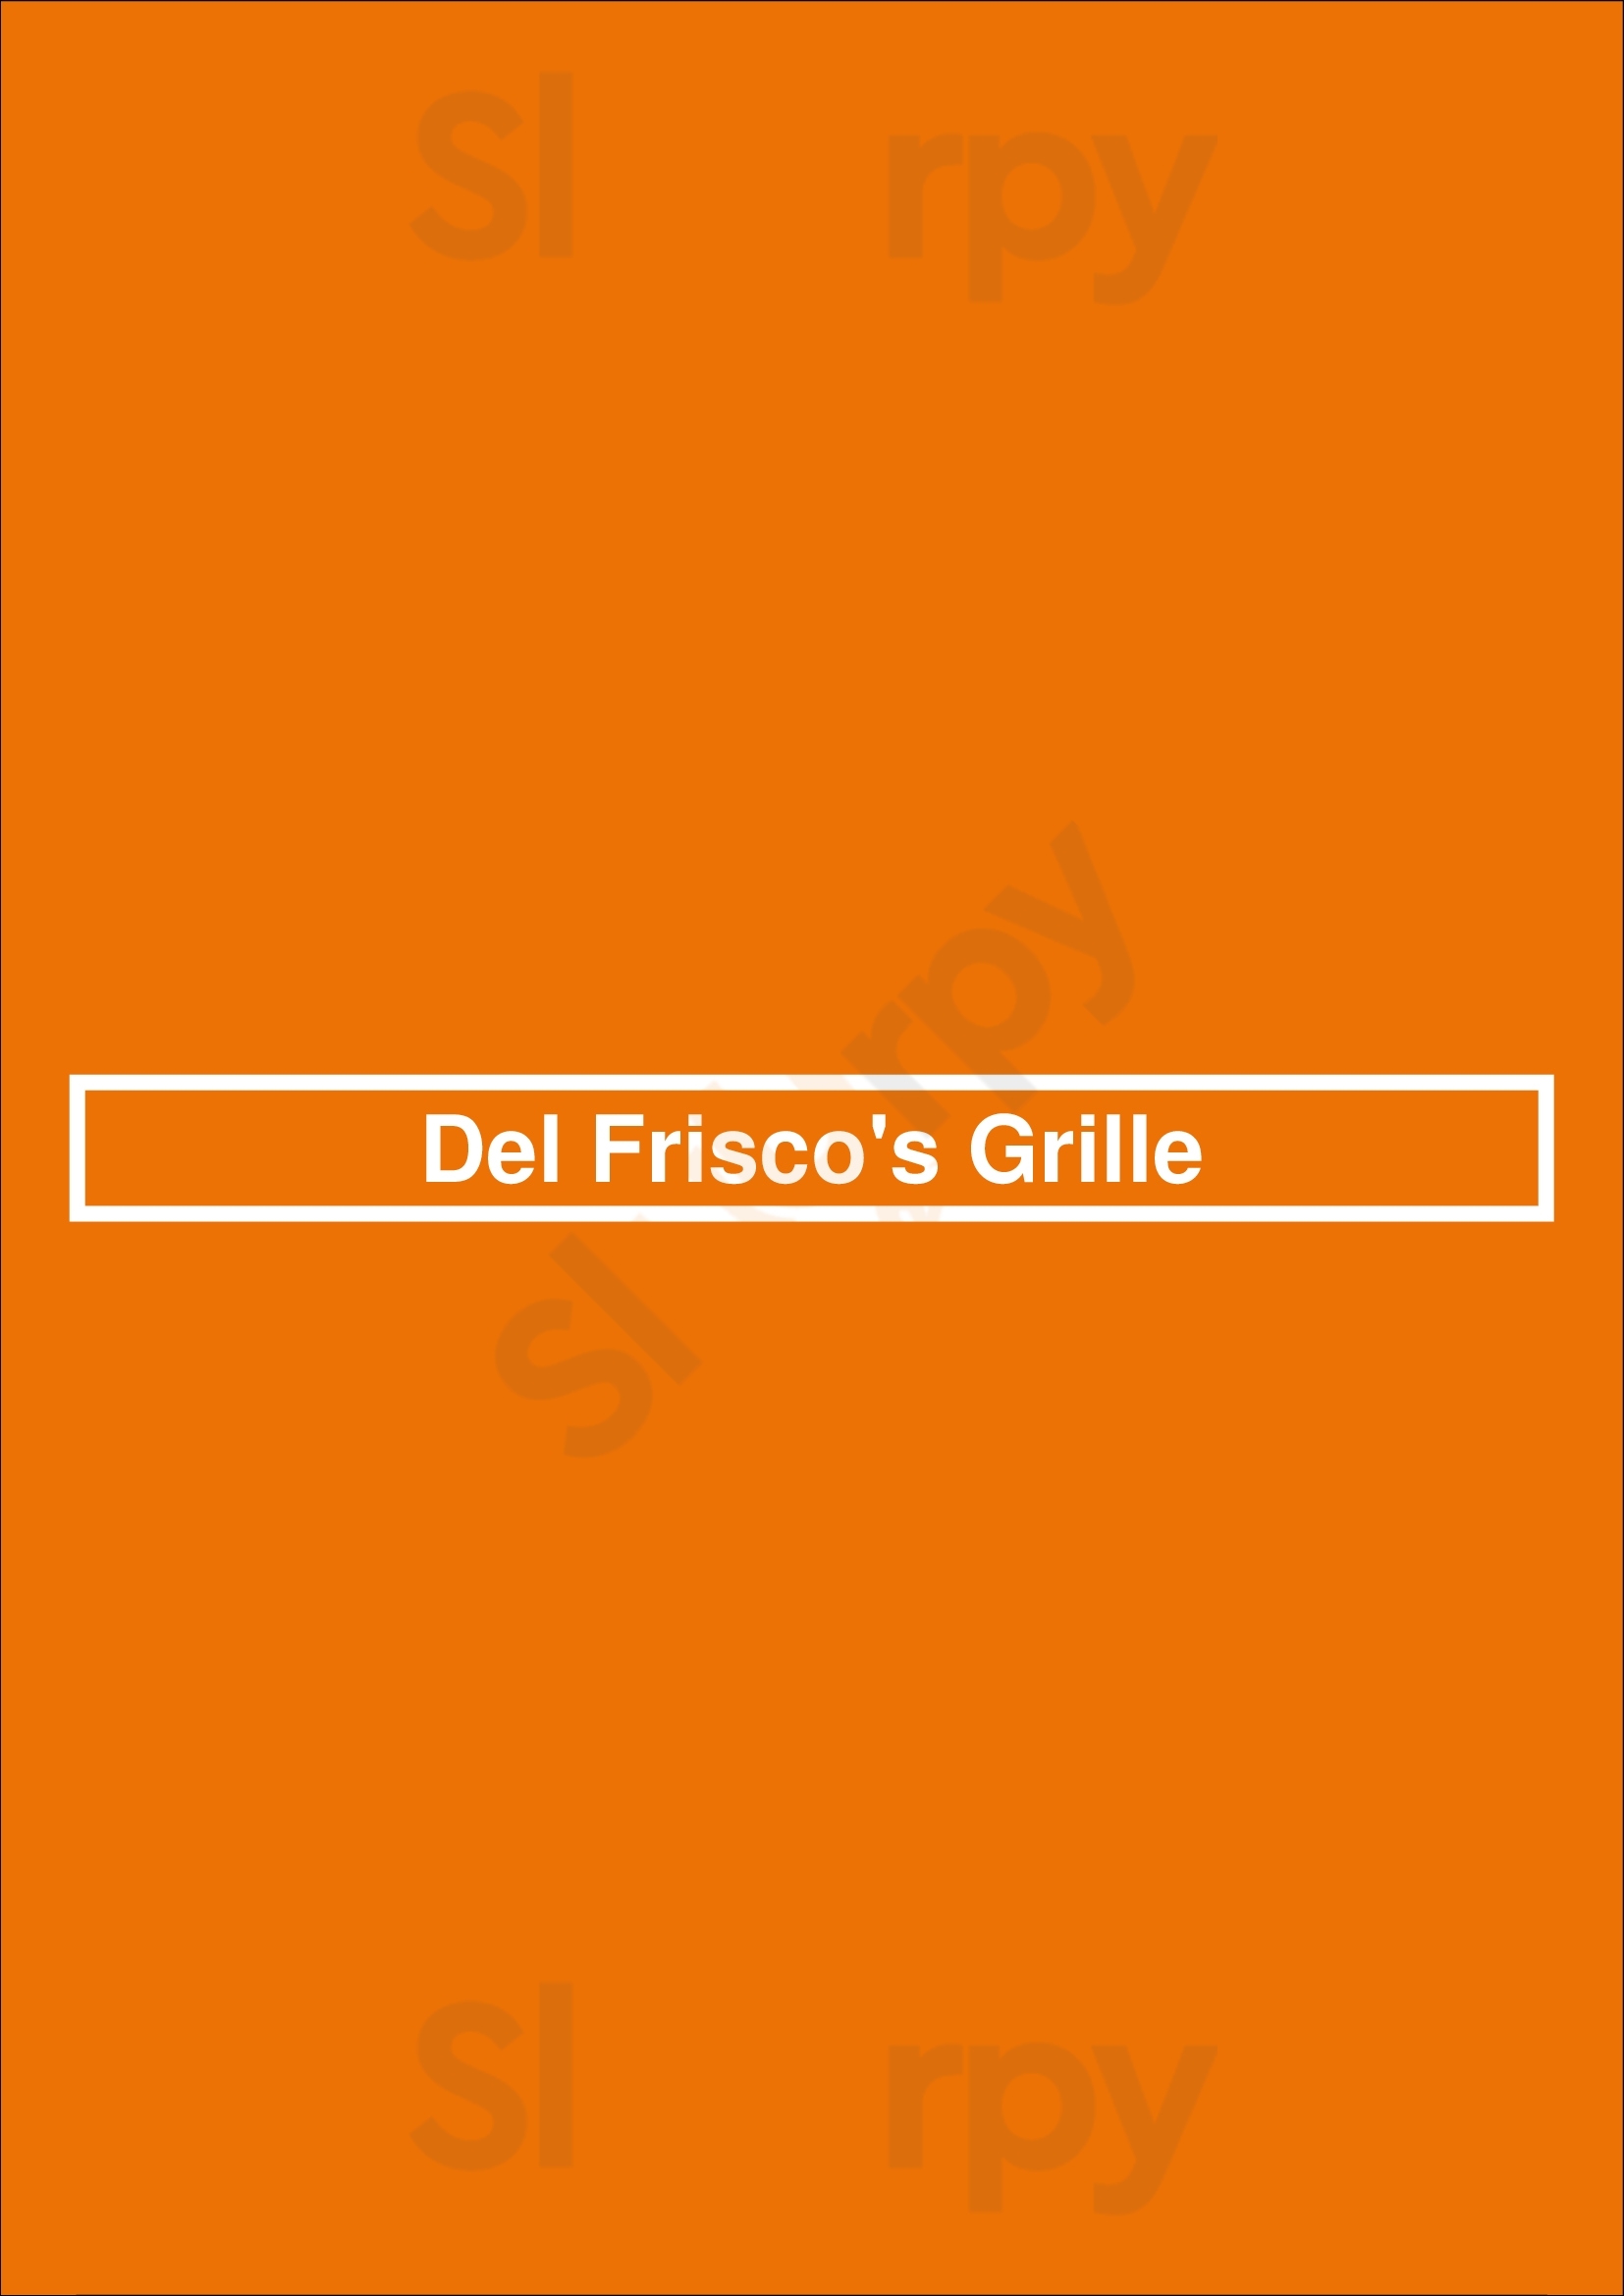 Del Frisco's Grille Fort Lauderdale Menu - 1